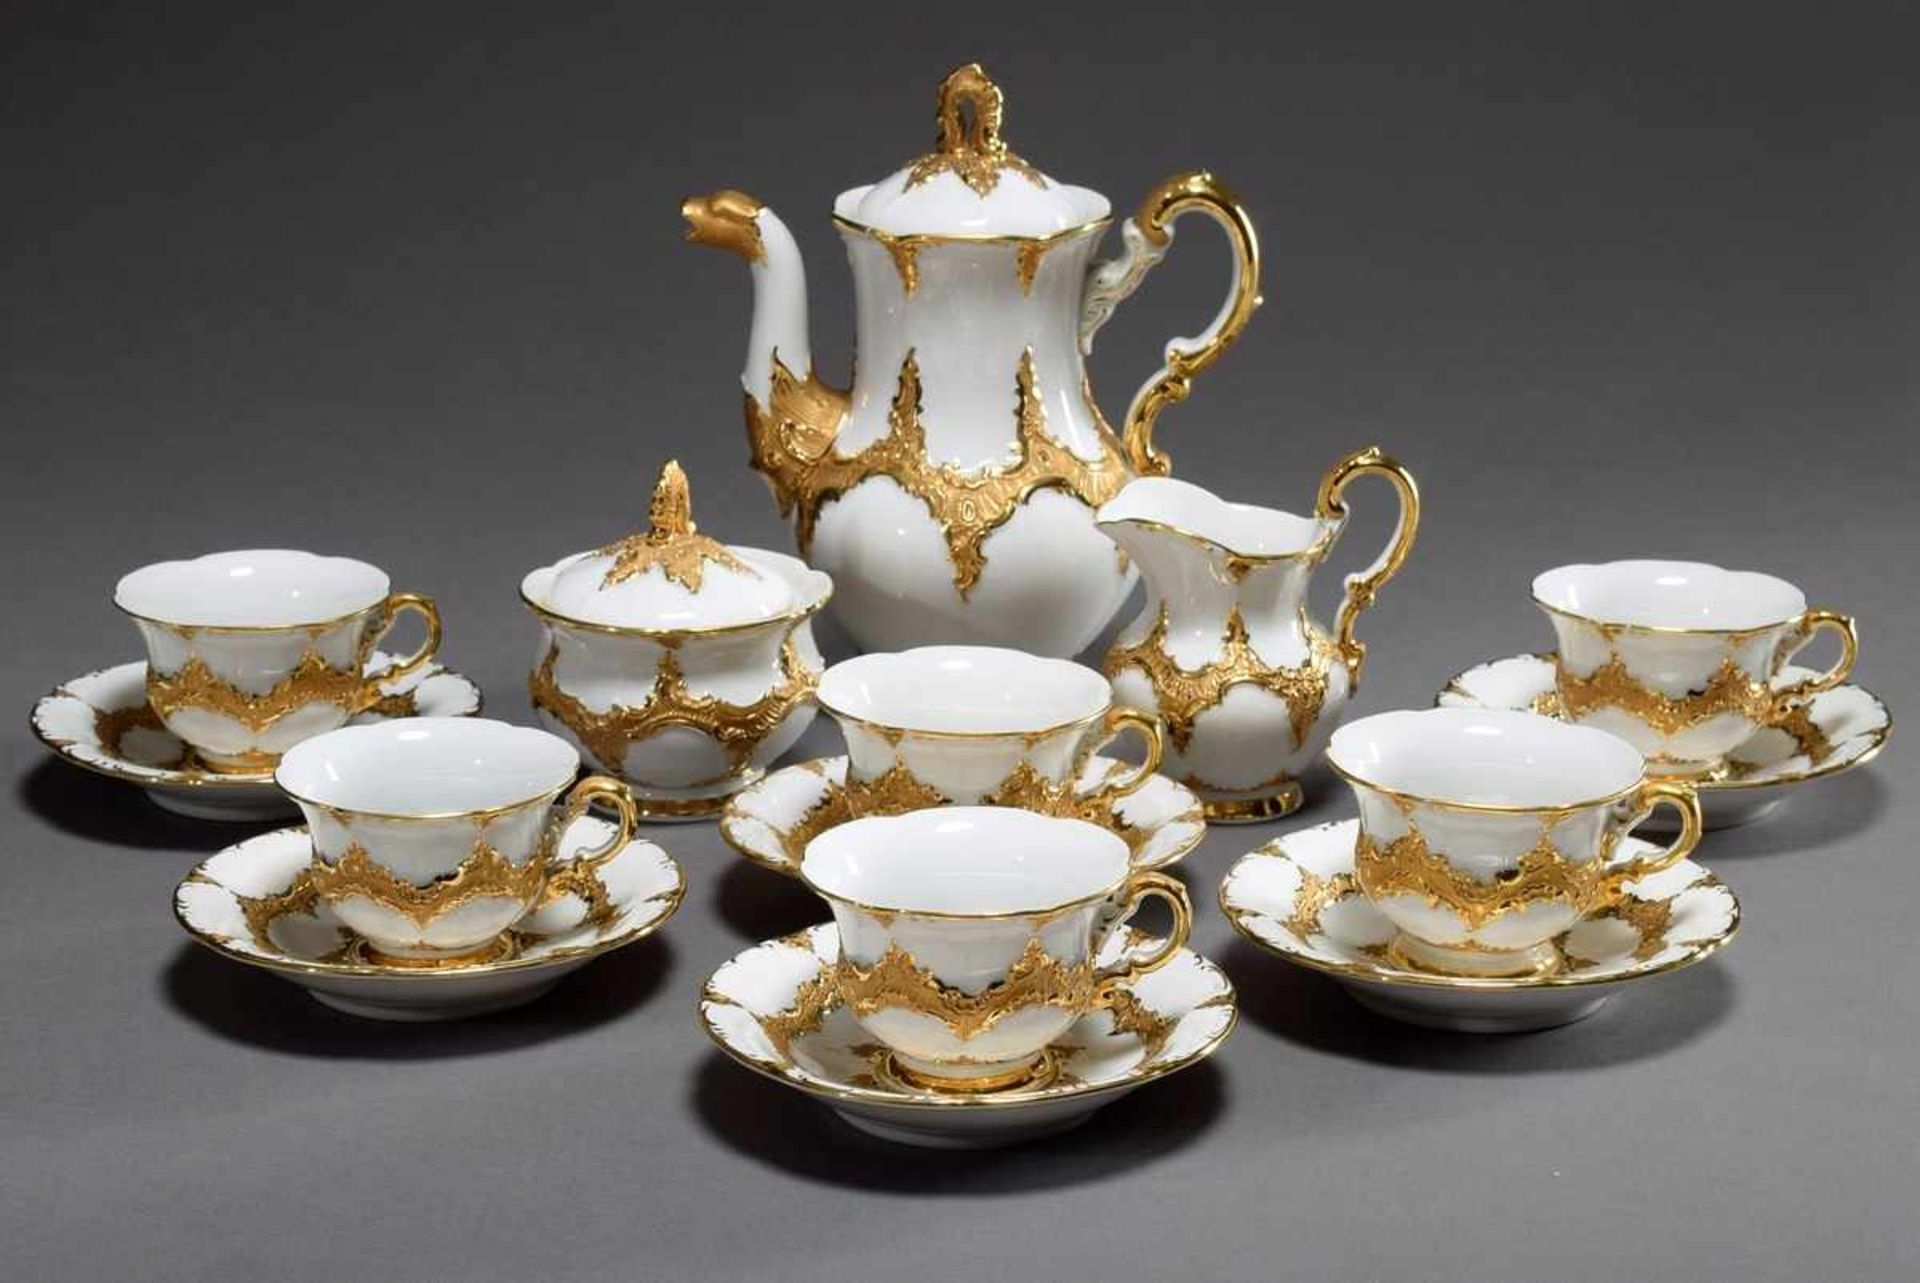 9 Pieces Meissen mocha set "B Form", white with rich gold decoration: 1 jug (h. 21cm), 6 cups/saucer